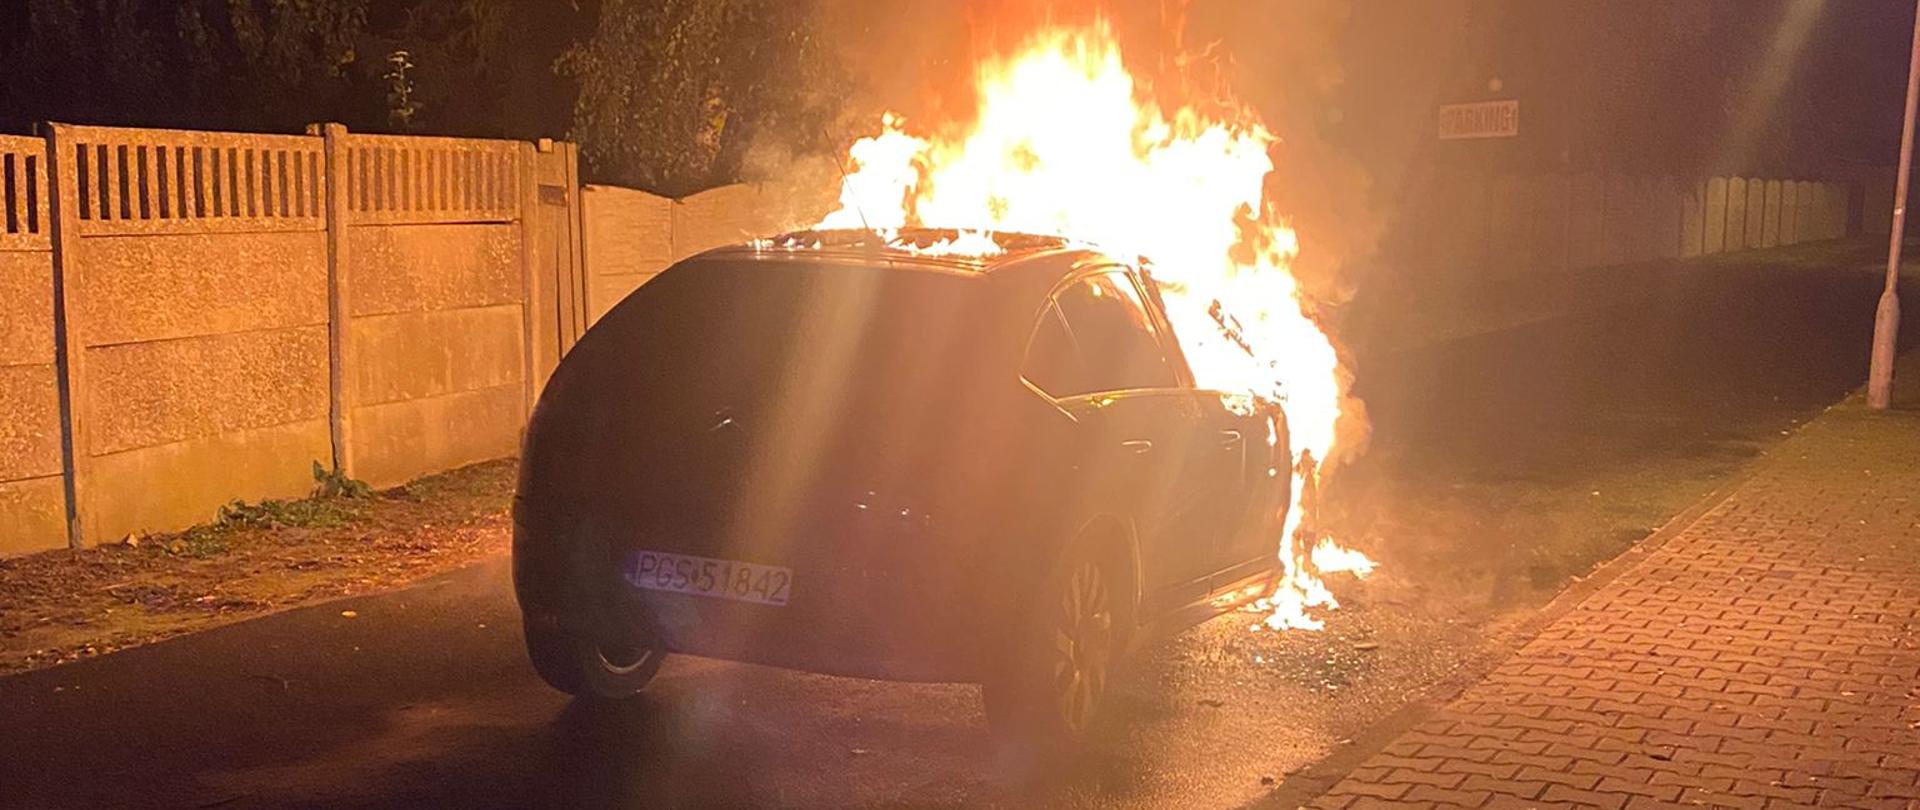 Zdjęcie przedstawia samochód osobowy w płomieniach, stojący na drodze.